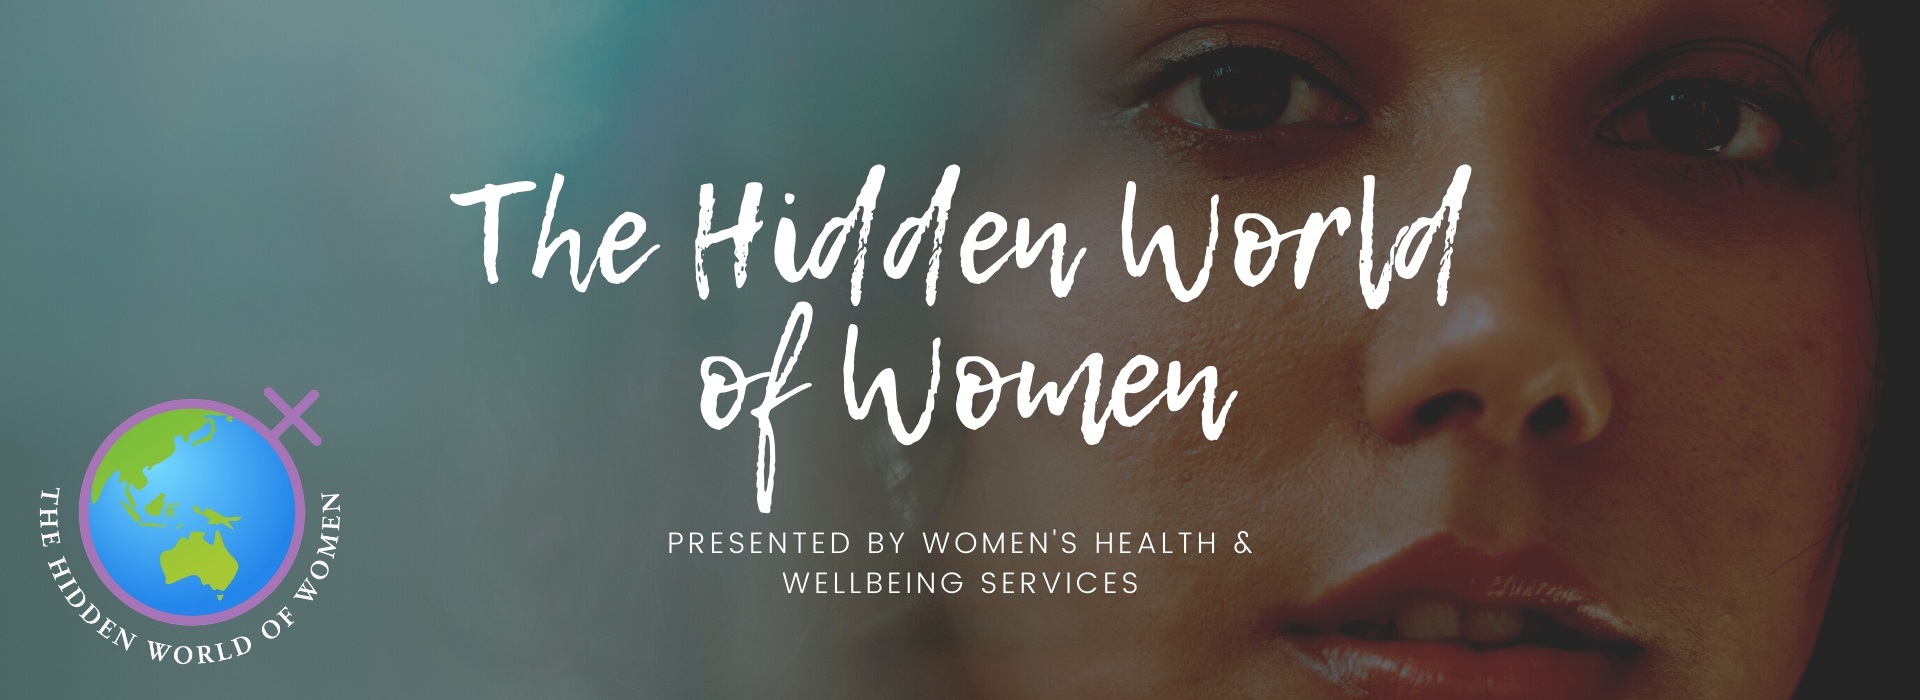 The Hidden World of Women